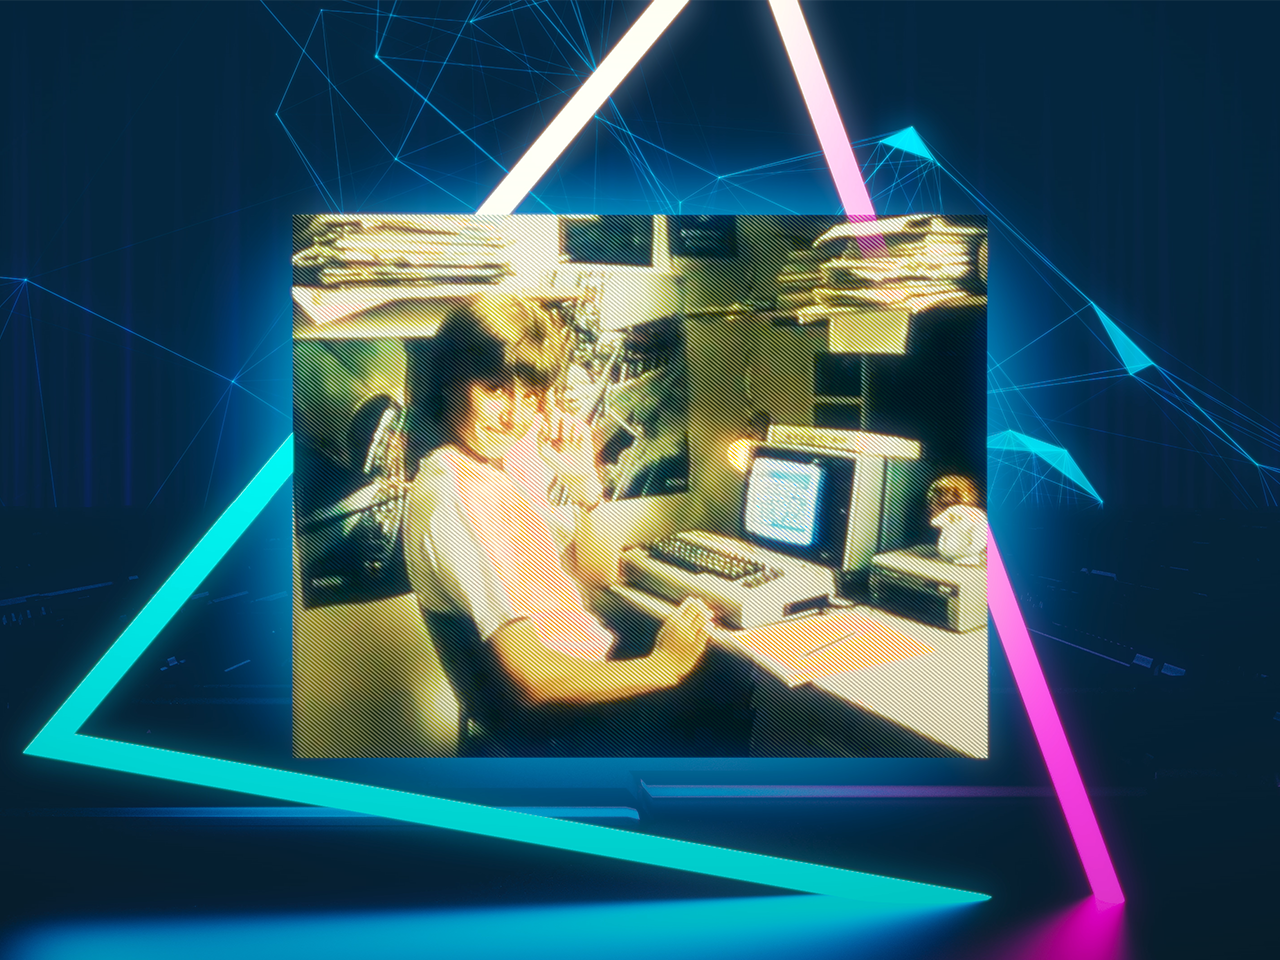 Commodore 64 home computer's revolution unites gamers in nostalgia